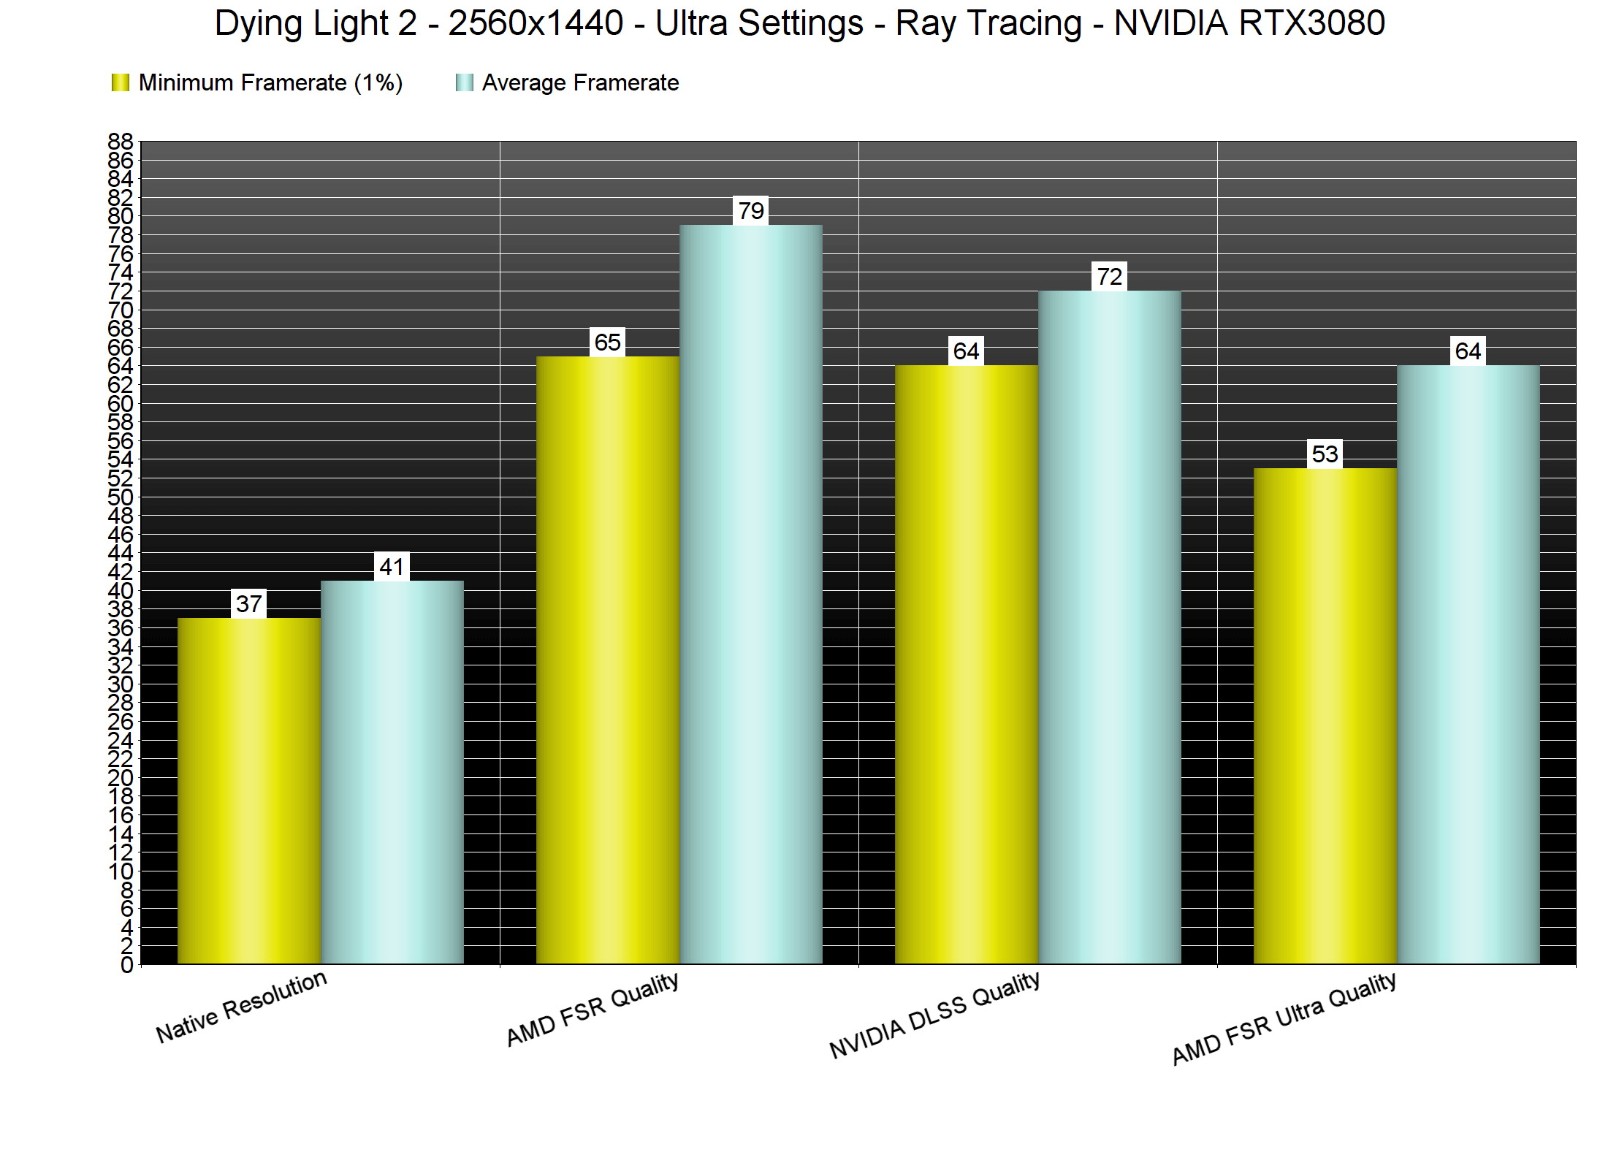 育碧前開發者：《垂死之光2》故意讓AMD FSR看起來糟糕